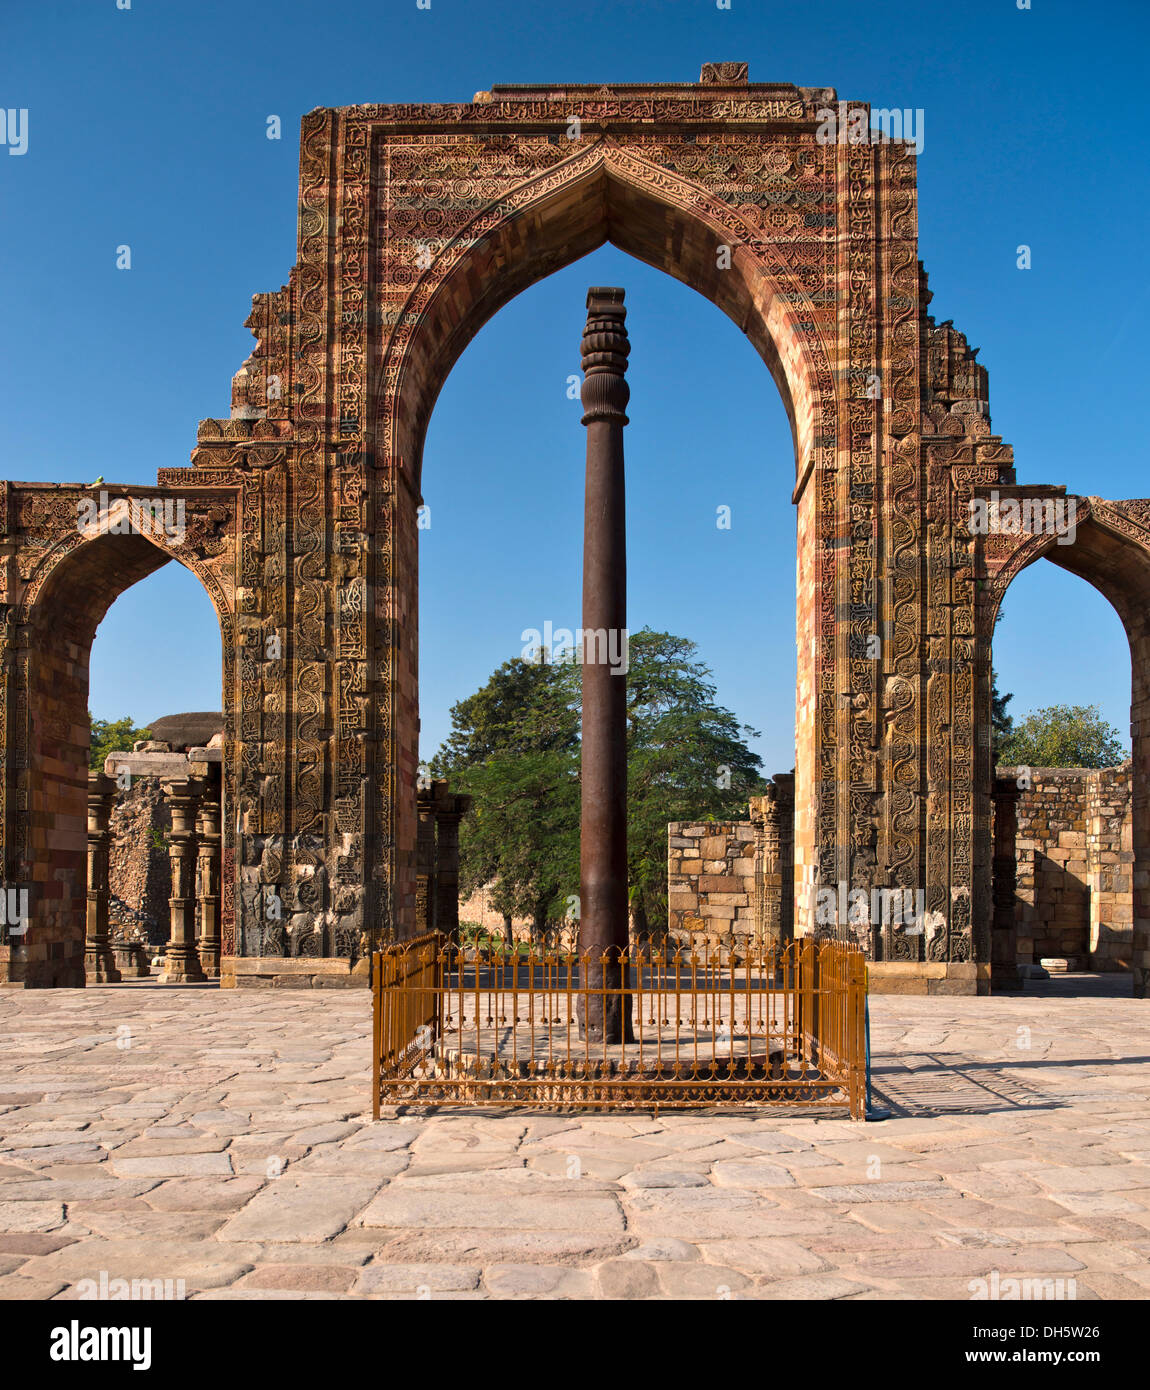 Portale di ingresso del Quwwat-ul-Islam Moschea Masjid con decori in rilievo e una colonna di ferro nel cortile, Qutb Minar Foto Stock